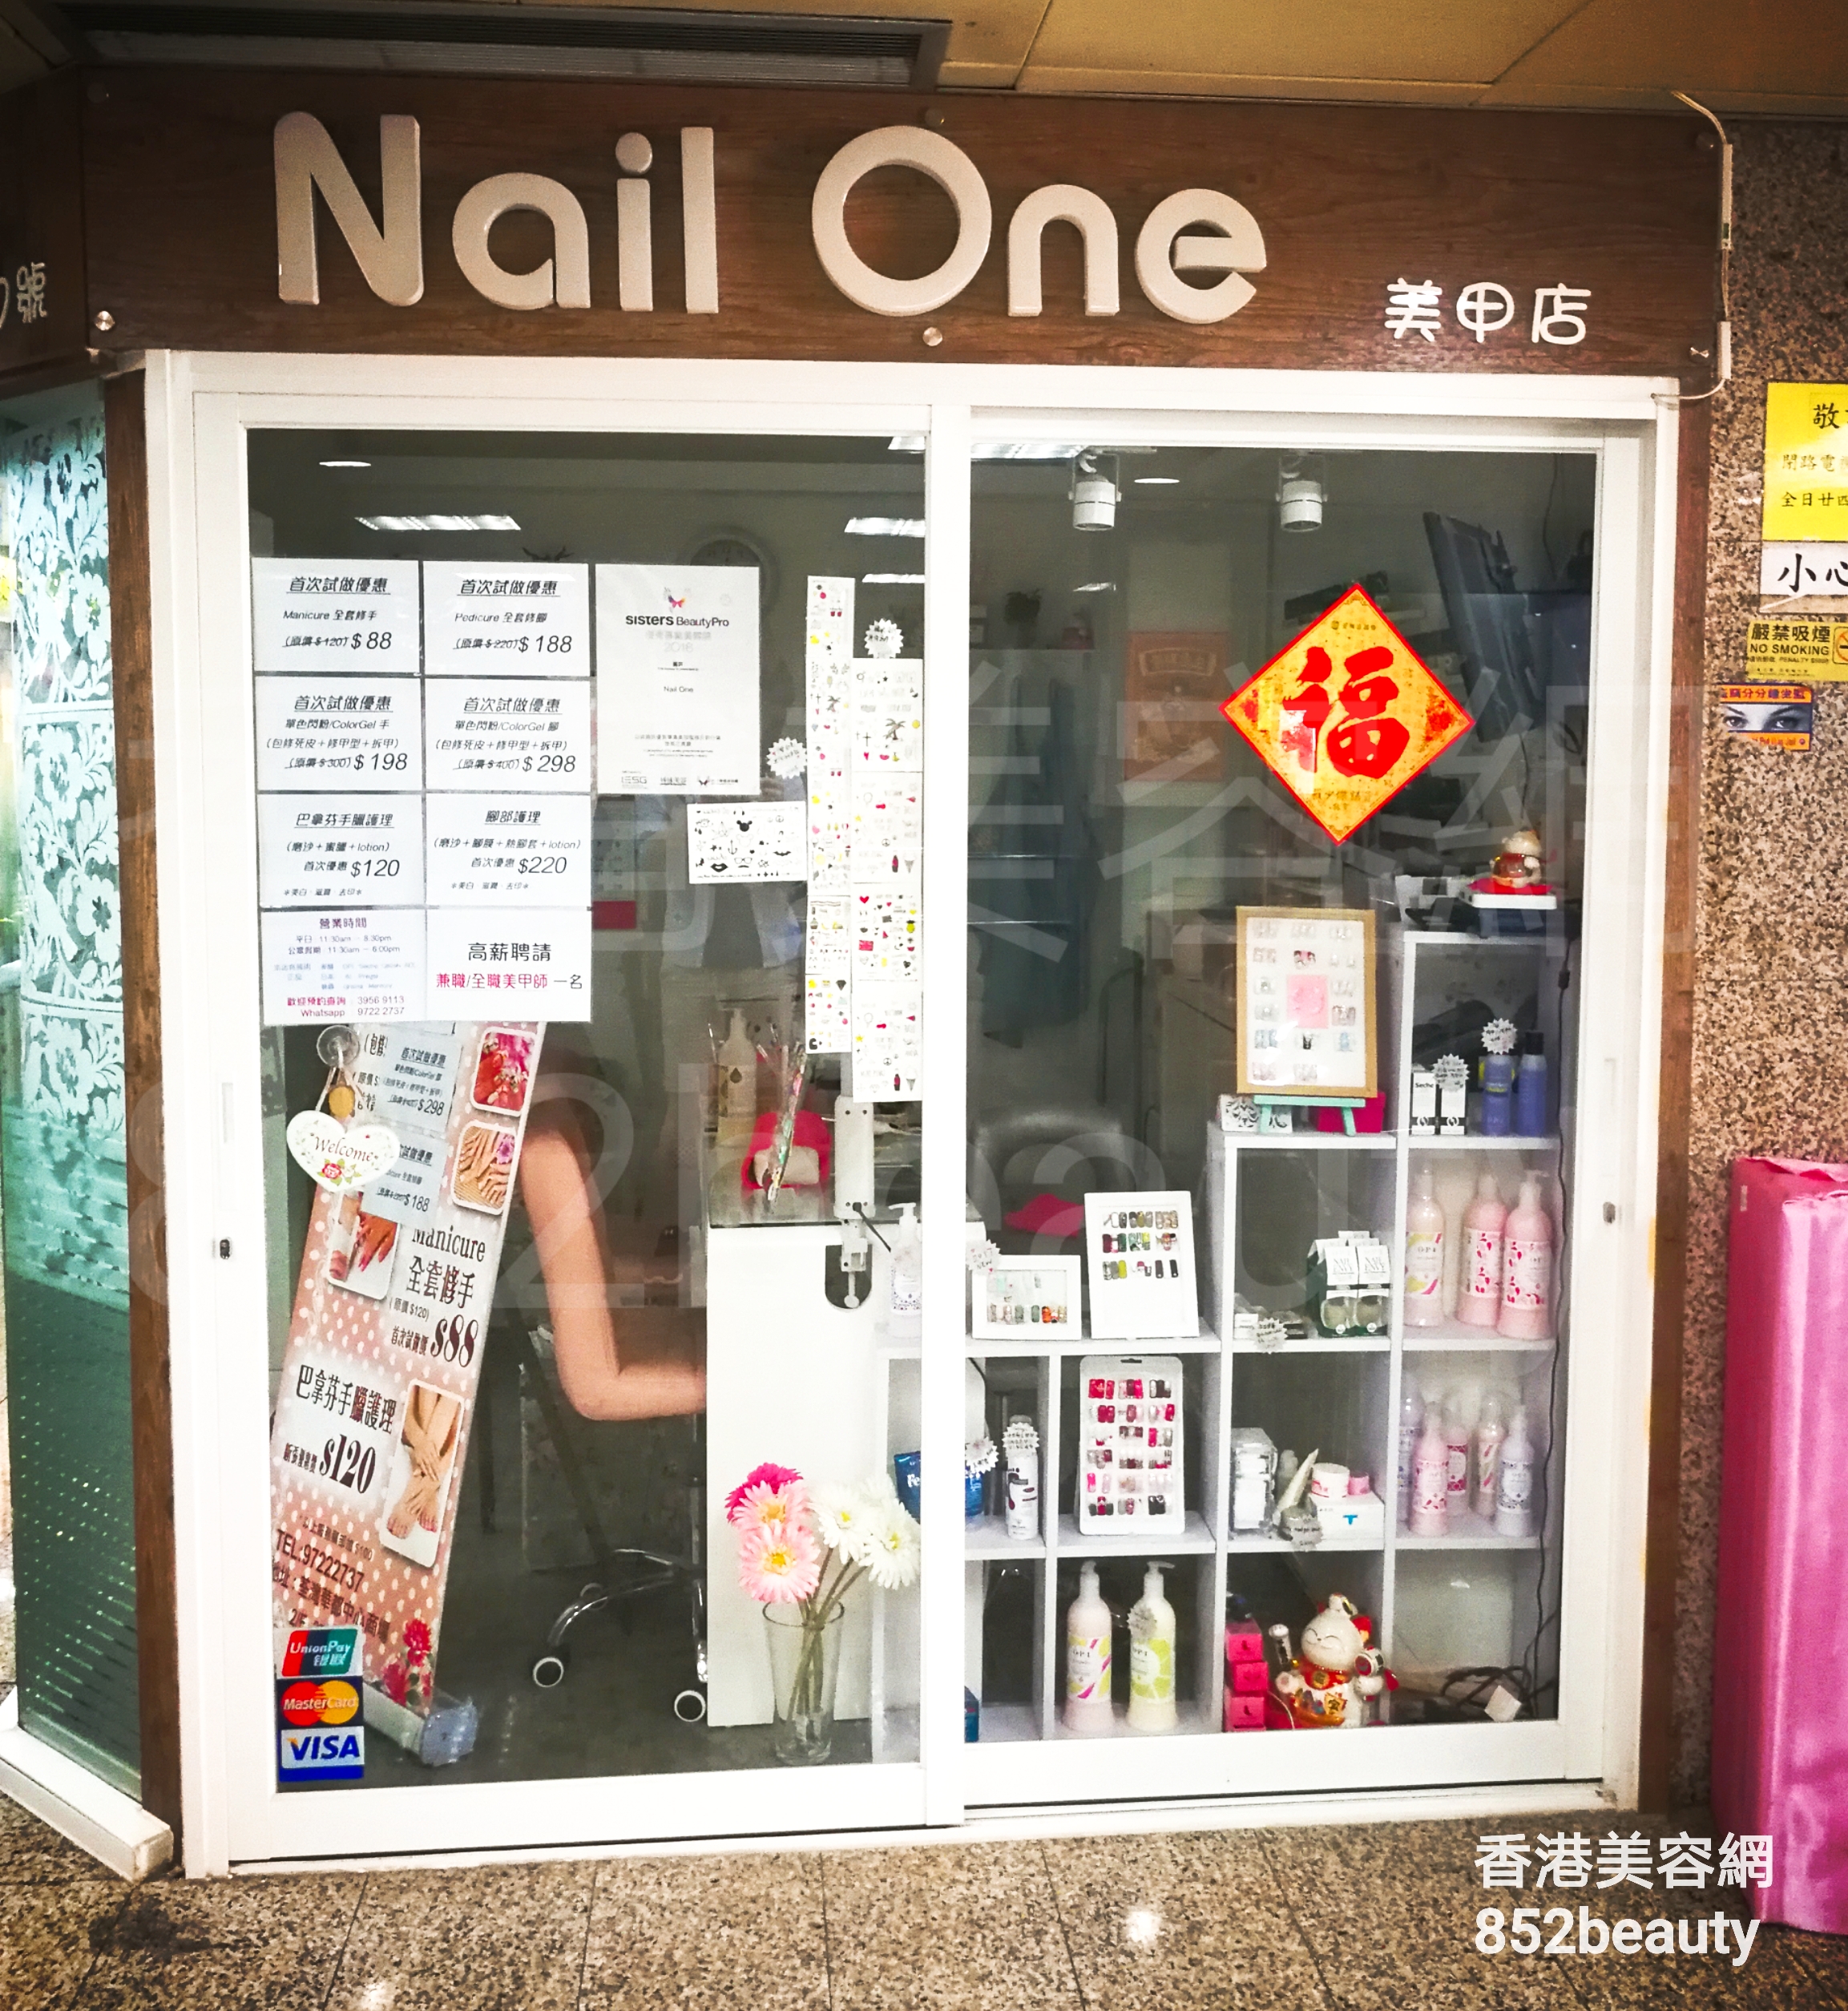 美容院 / 美容师: Nail One 美甲店